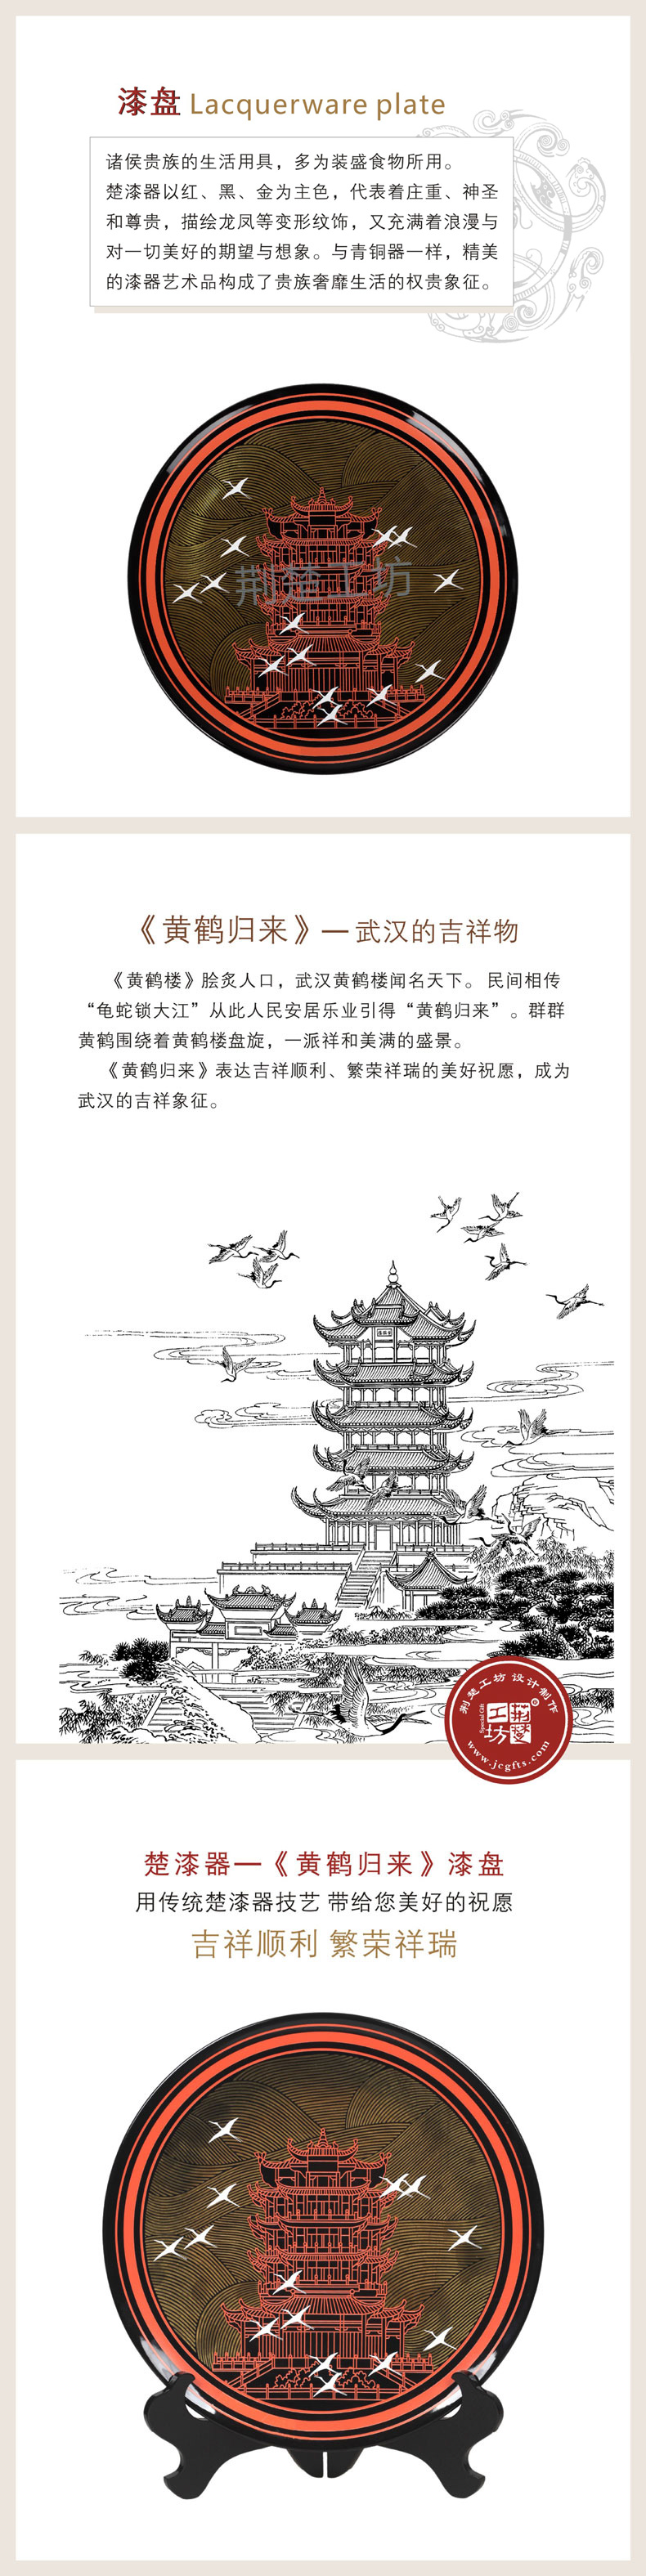 黄鹤归来-武汉的吉祥物 寓意吉祥顺利、繁荣祥瑞